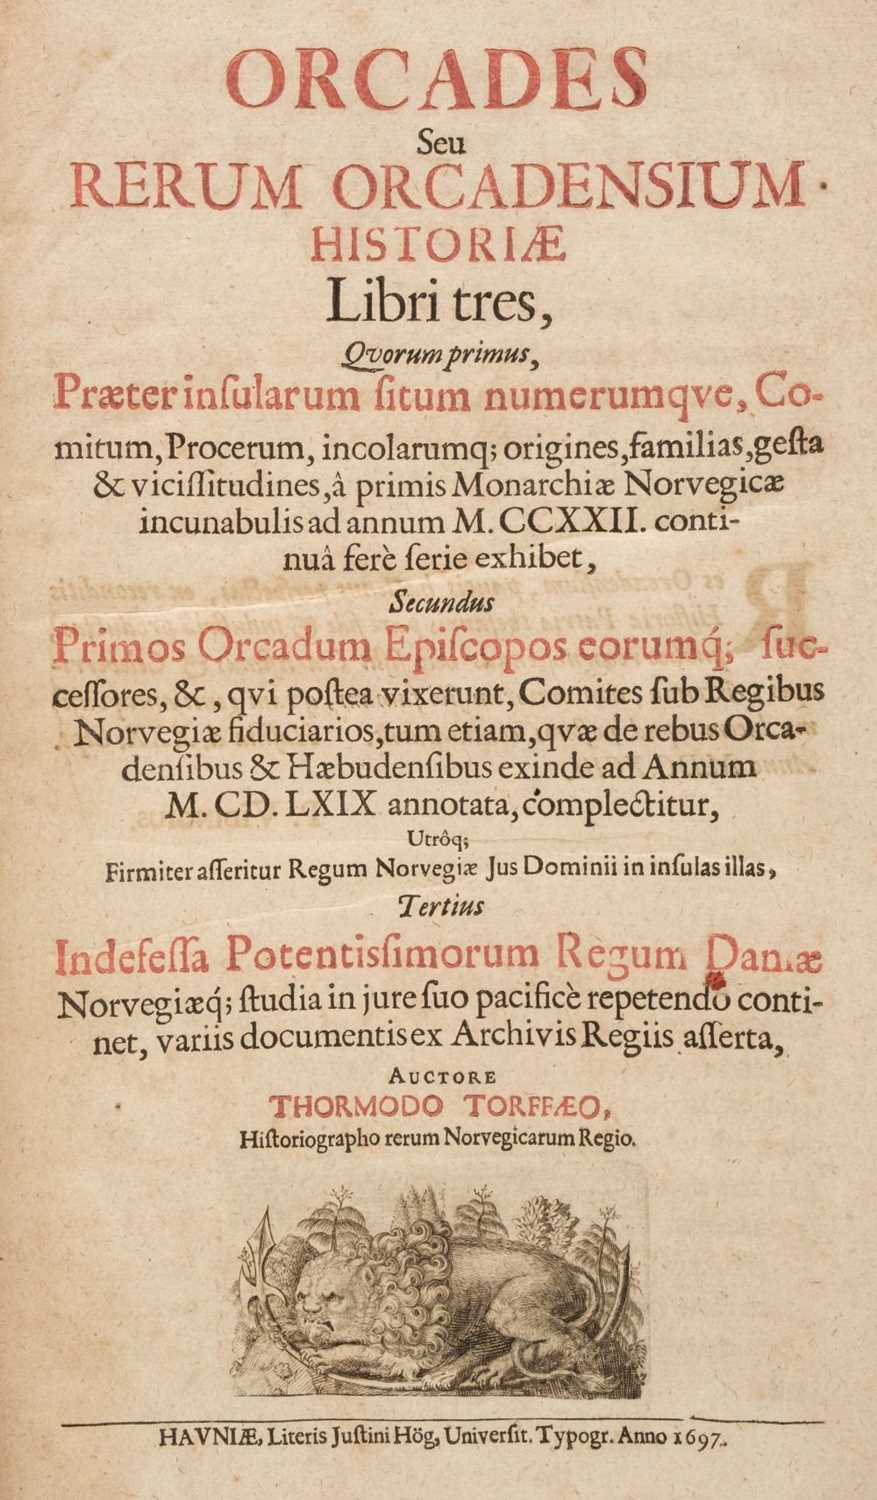 Lot 100 - Torfaeus (Thormodus). Orcades seu Rerum Orcadensium Historiae, 1st edition, Copenhagen, 1697